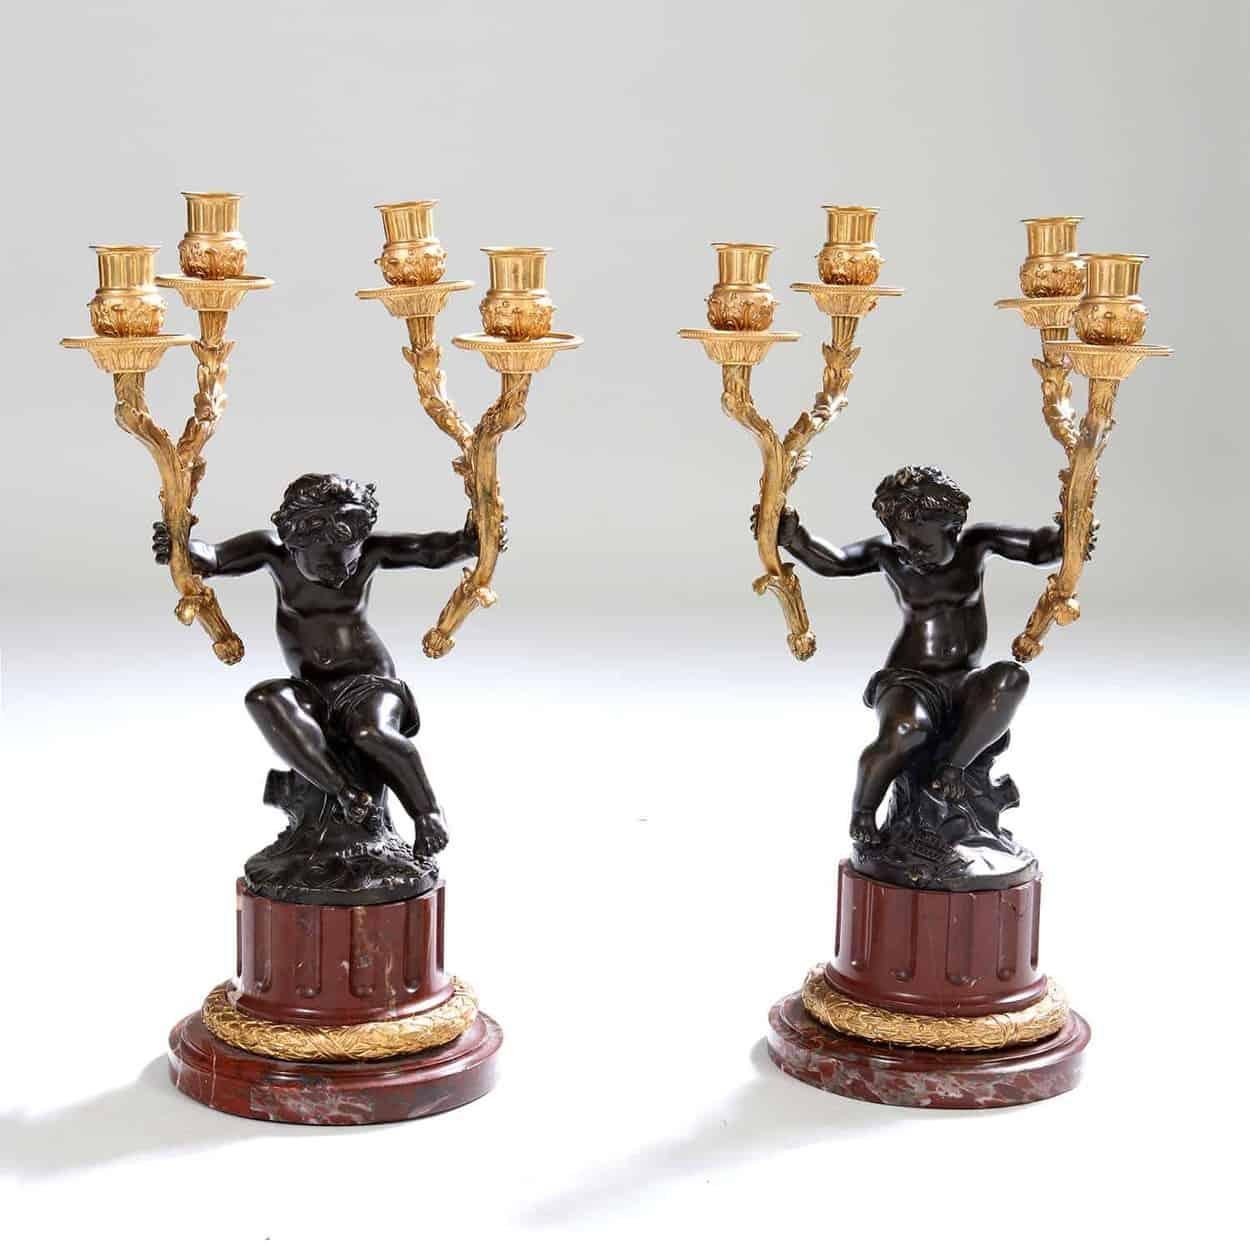 Garniture de pendule du XIXe siècle, la pendule avec un chérubin en bronze finement moulé et patiné assis sur une colonne en marbre rouge avec des montures en bronze doré, il porte le mouvement de la pendule dans une guirlande de fleurs dorées, le